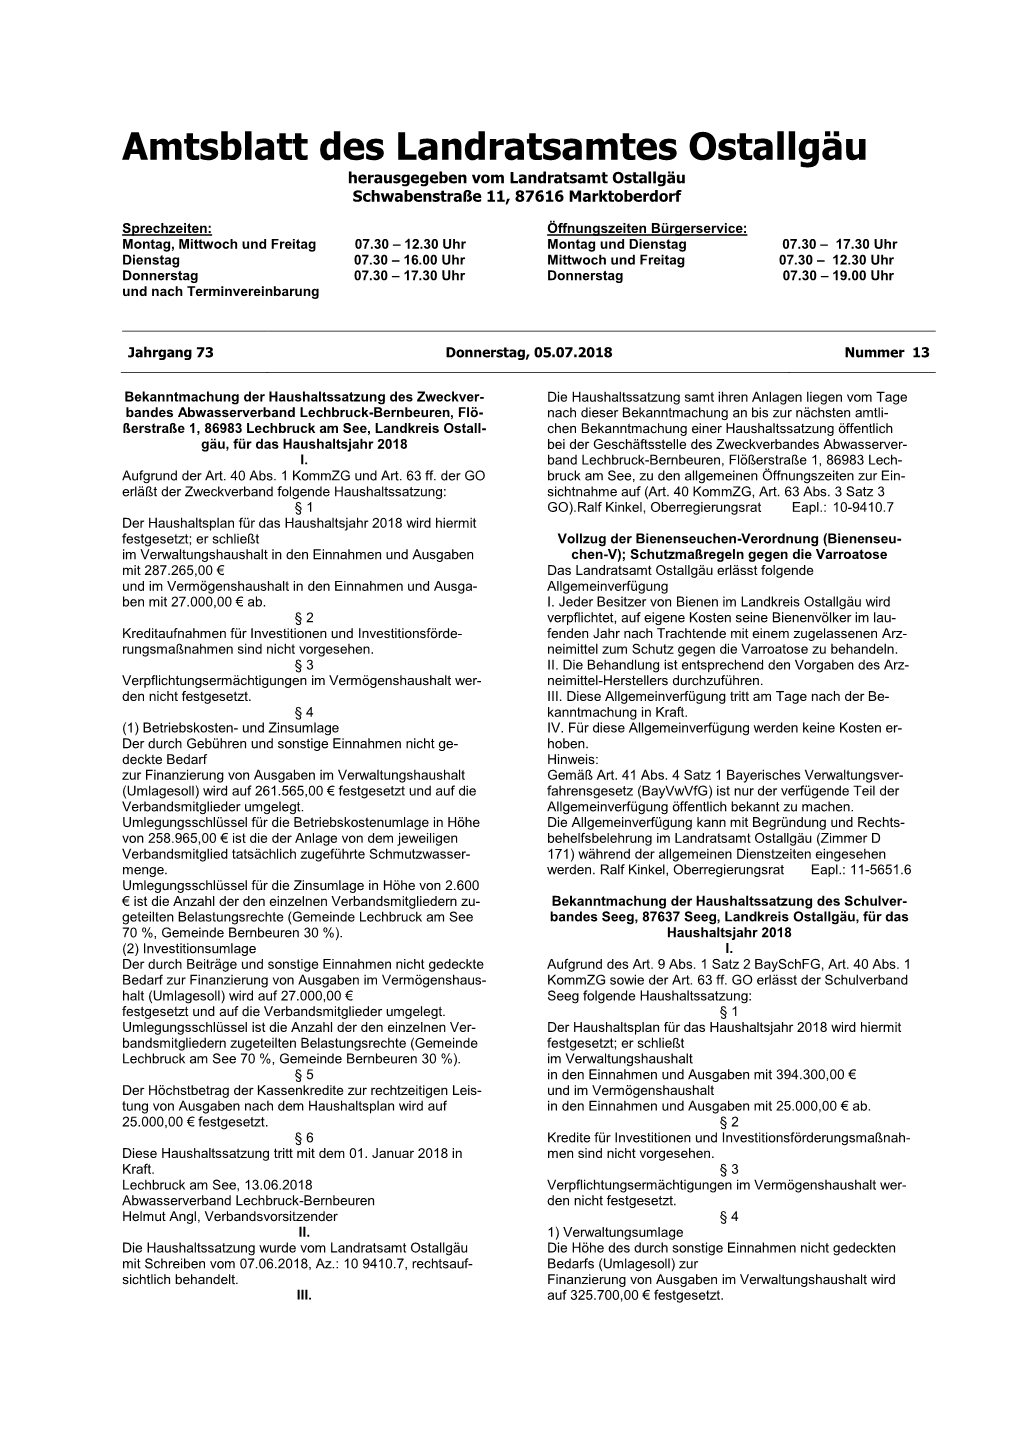 Amtsblatt Des Landratsamtes Ostallgäu Herausgegeben Vom Landratsamt Ostallgäu Schwabenstraße 11, 87616 Marktoberdorf